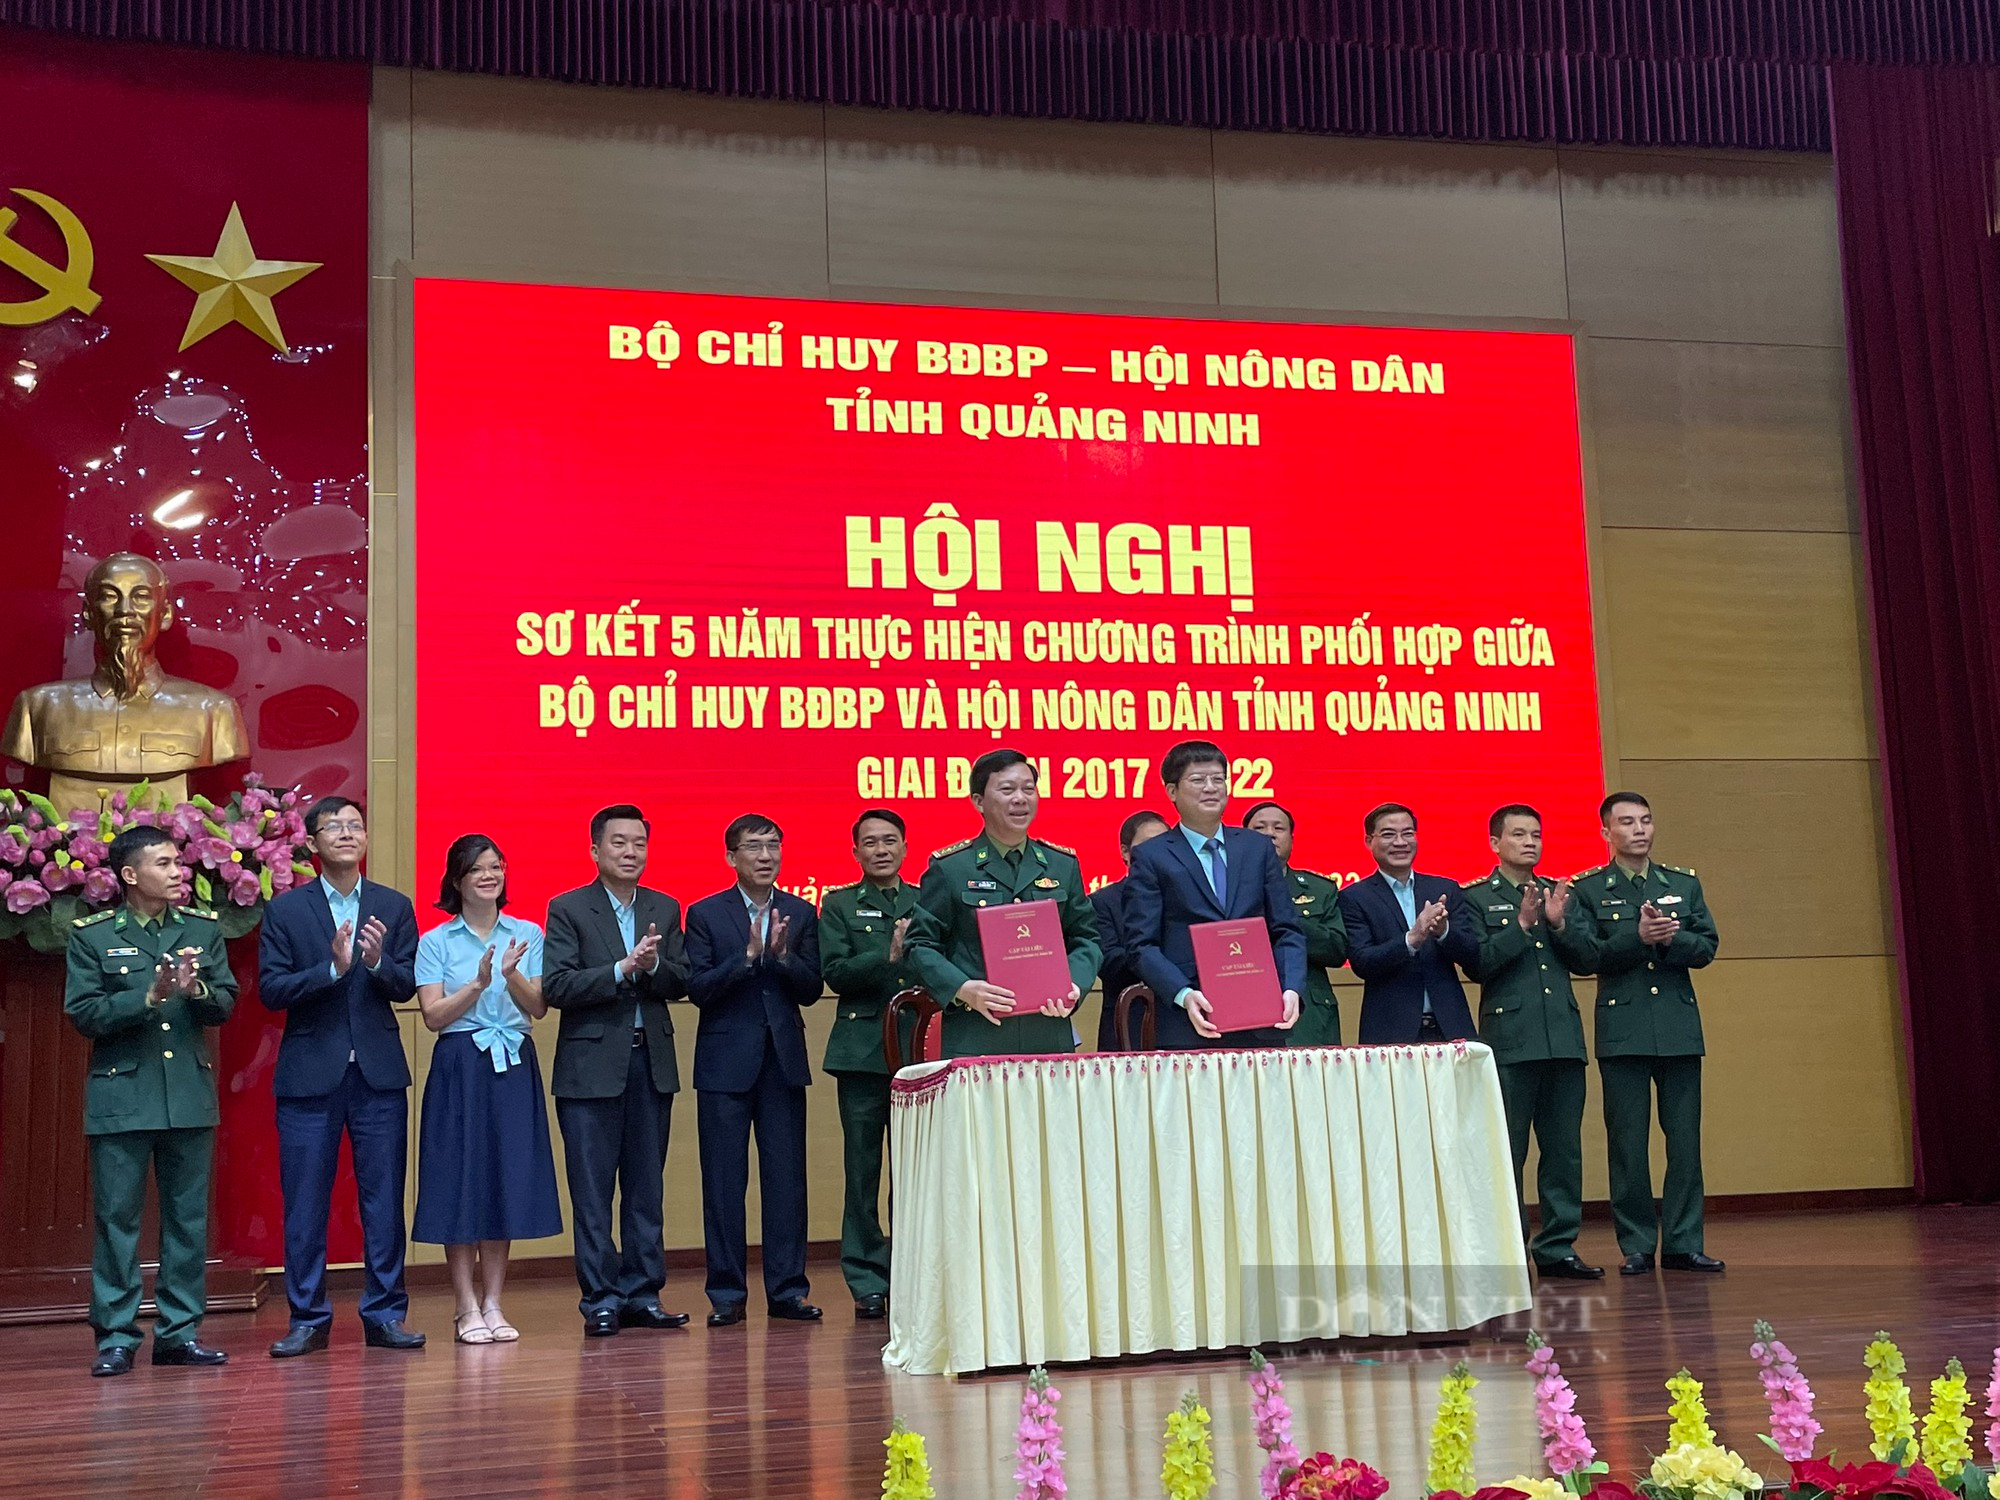 Hiệu quả chương trình phối hợp giữa Hội Nông dân và Bộ Chỉ huy Bộ đội Biên phòng tỉnh Quảng Ninh giai đoạn 2017-2022 - Ảnh 2.